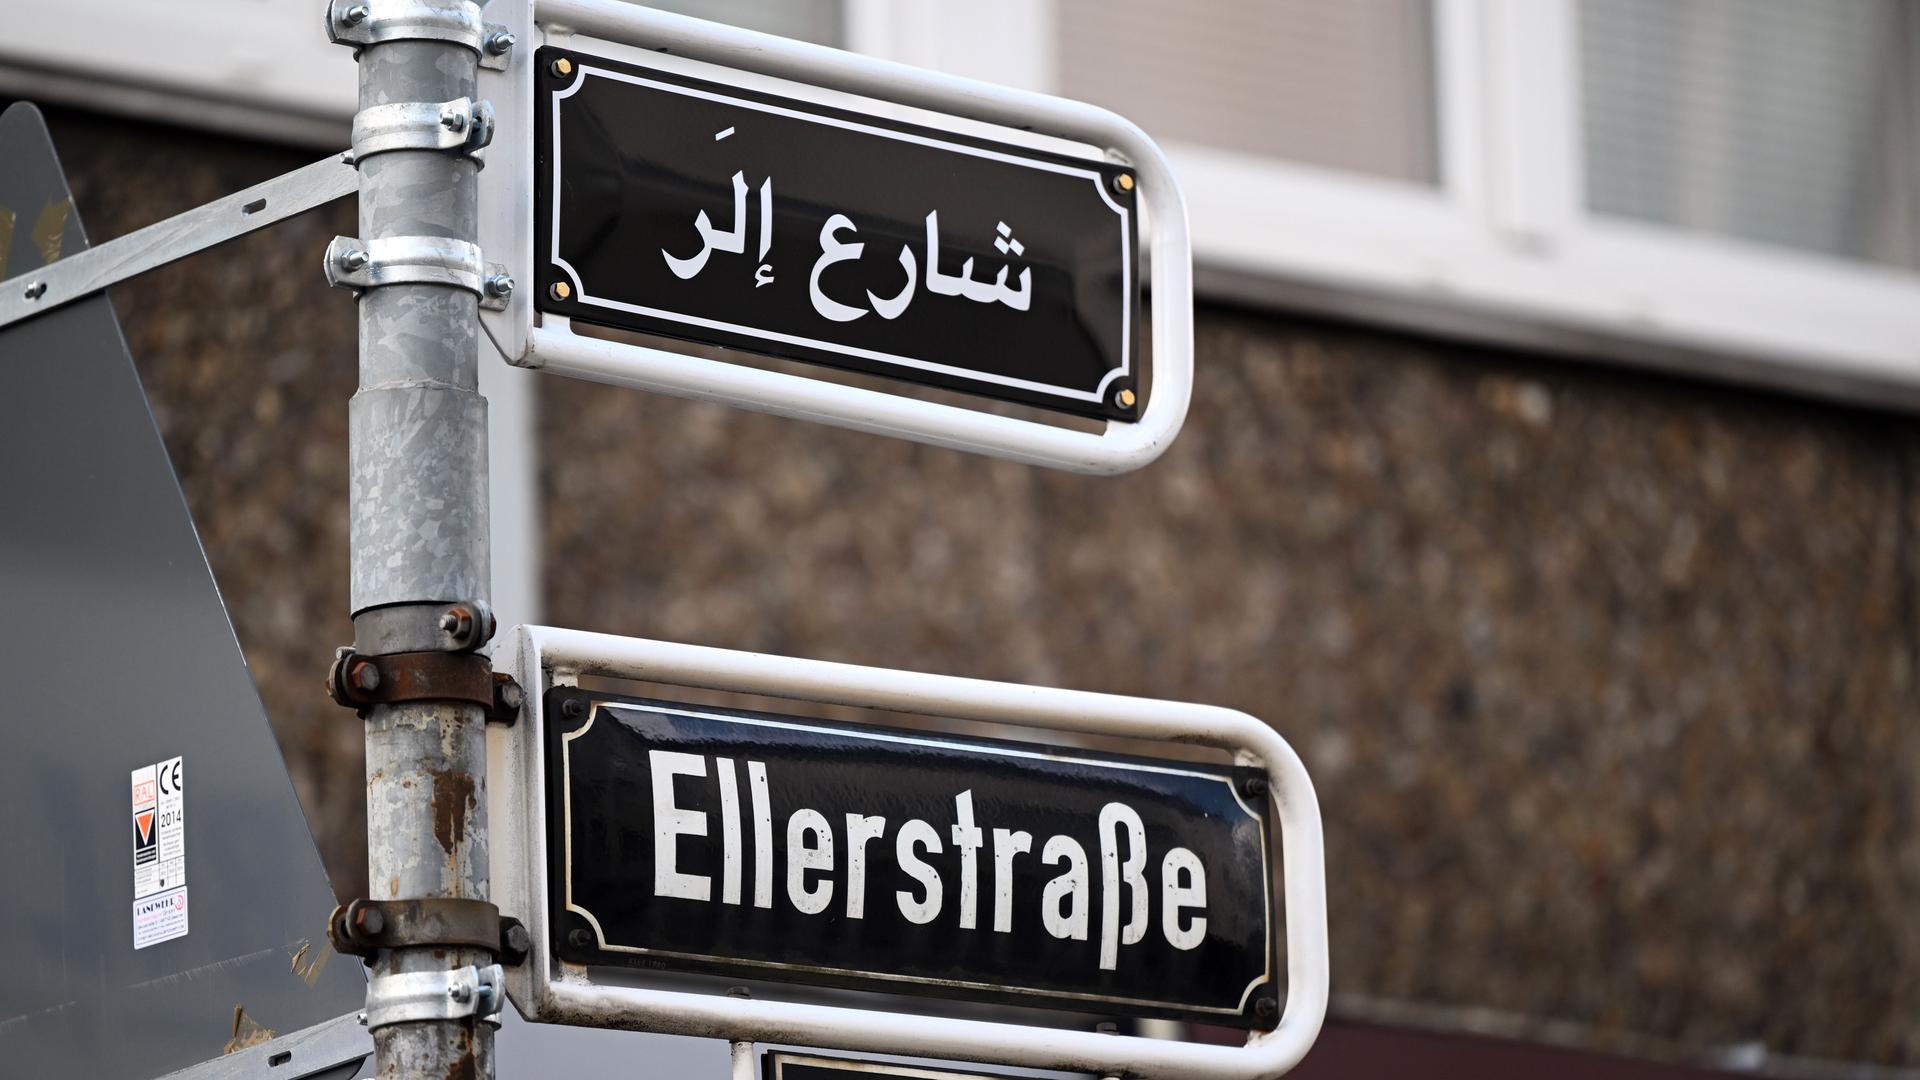 Ellerstraße - Düsseldorfs Oberbürgermeister Keller (CDU) bringt "rassistische Verunstaltung" von Straßenschild zur Anzeige - Staatsschutz ermittelt